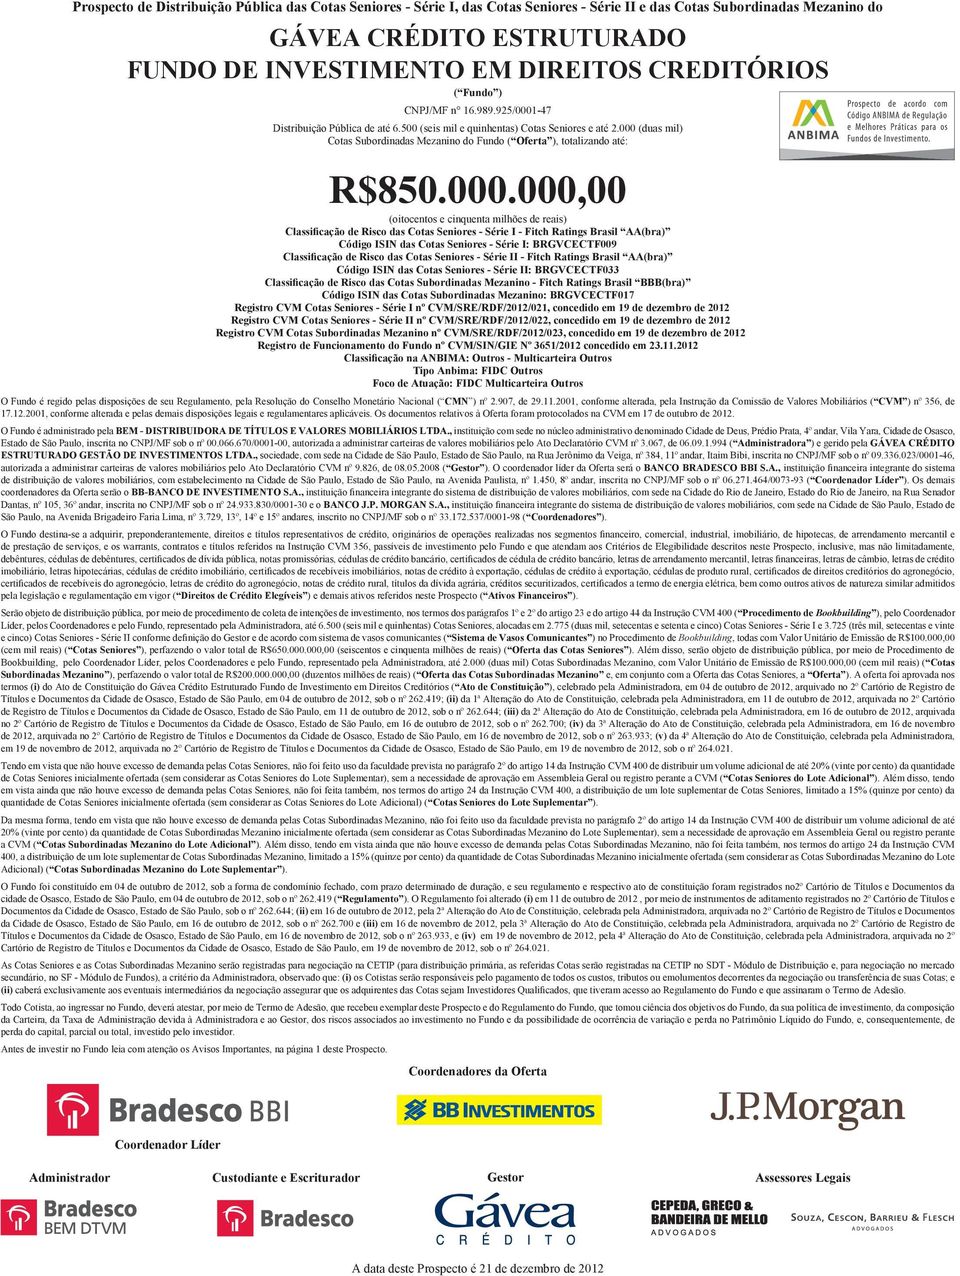 000 (duas mil) Cotas Subordinadas Mezanino do Fundo ( Oferta ), totalizando até: R$850.000.000,00 (oitocentos e cinquenta milhões de reais) Classificação de Risco das Cotas Seniores - Série I - Fitch